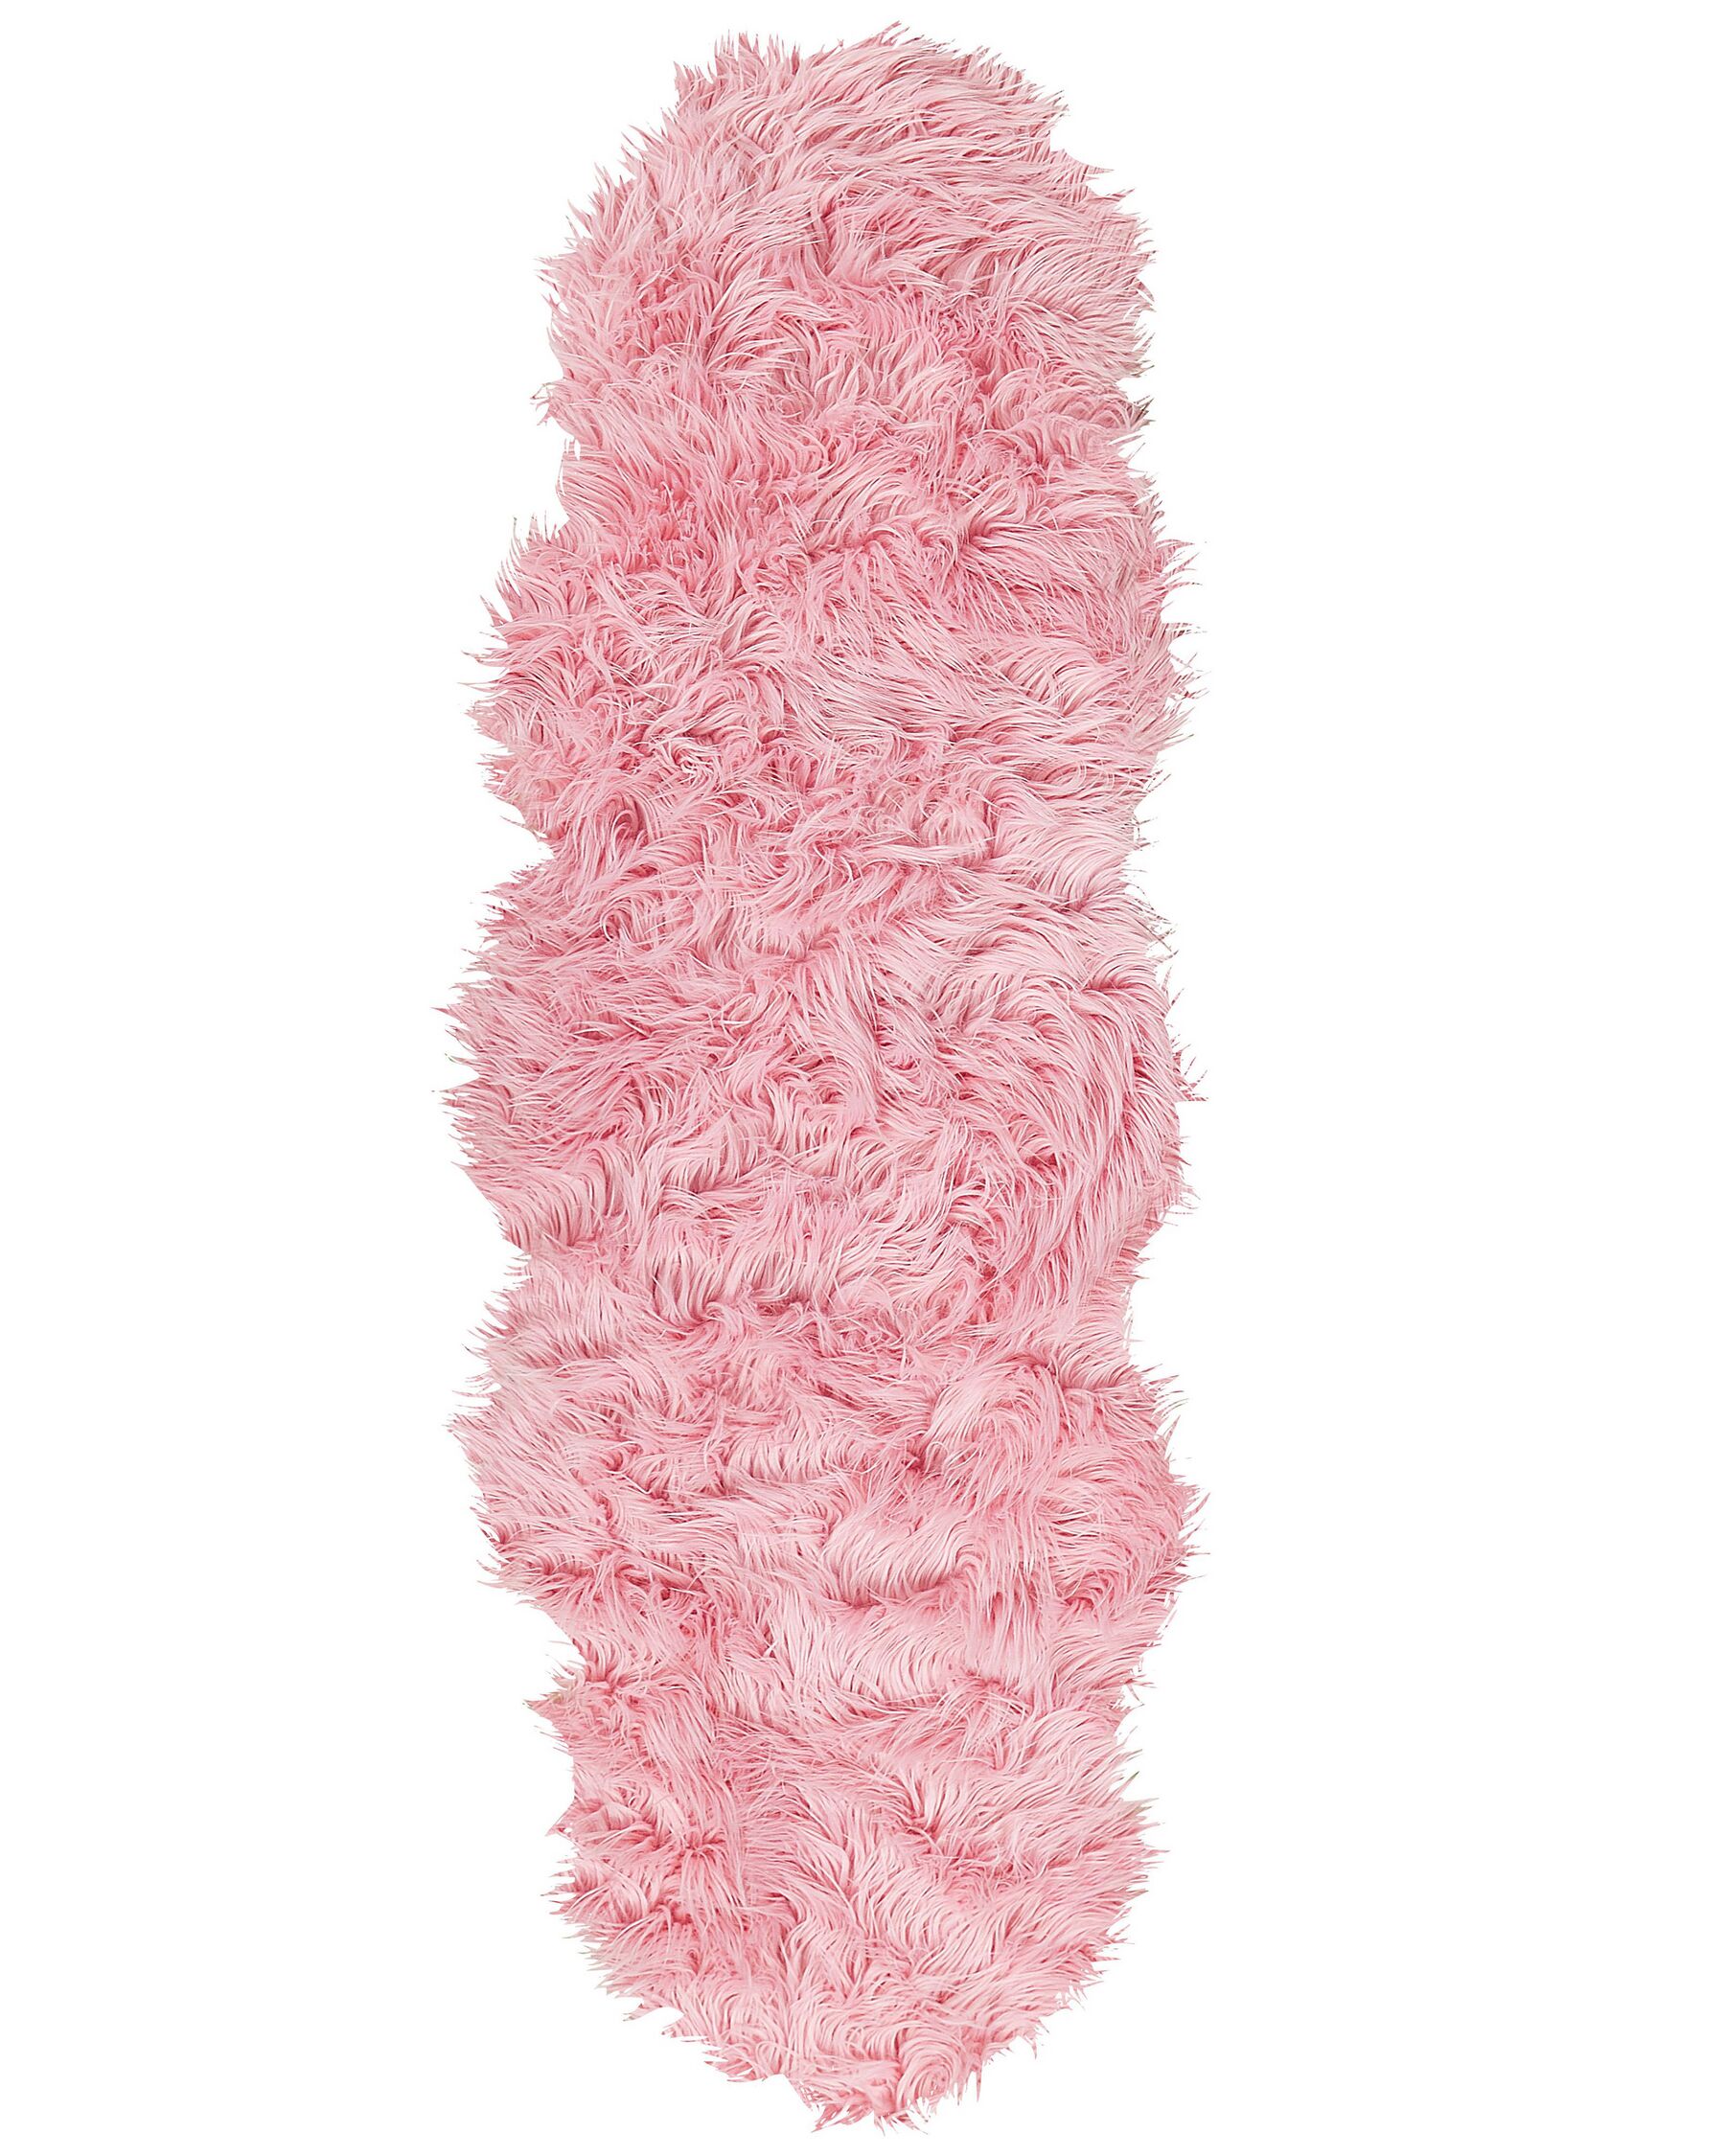 Tapete tipo pele de ovelha rosa 180 x 60 cm MAMUNGARI_822127